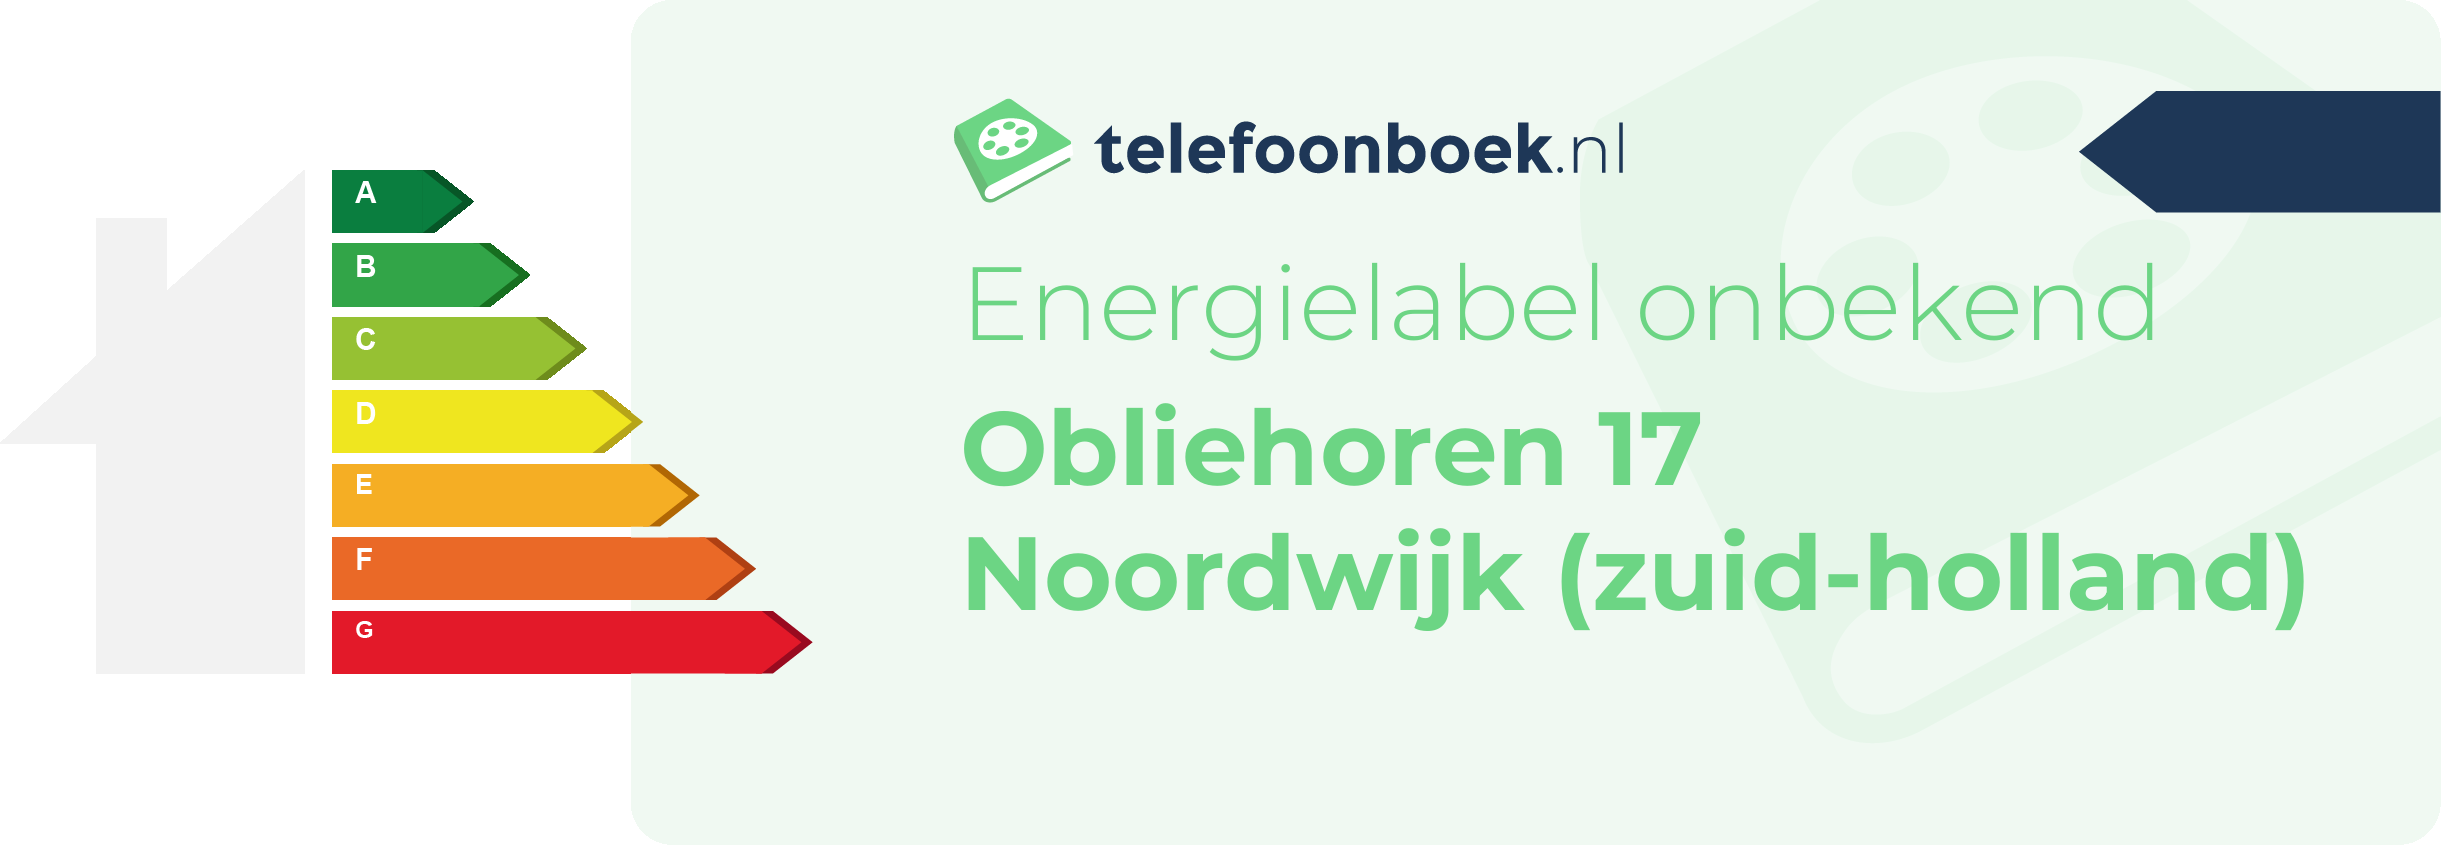 Energielabel Obliehoren 17 Noordwijk (Zuid-Holland)